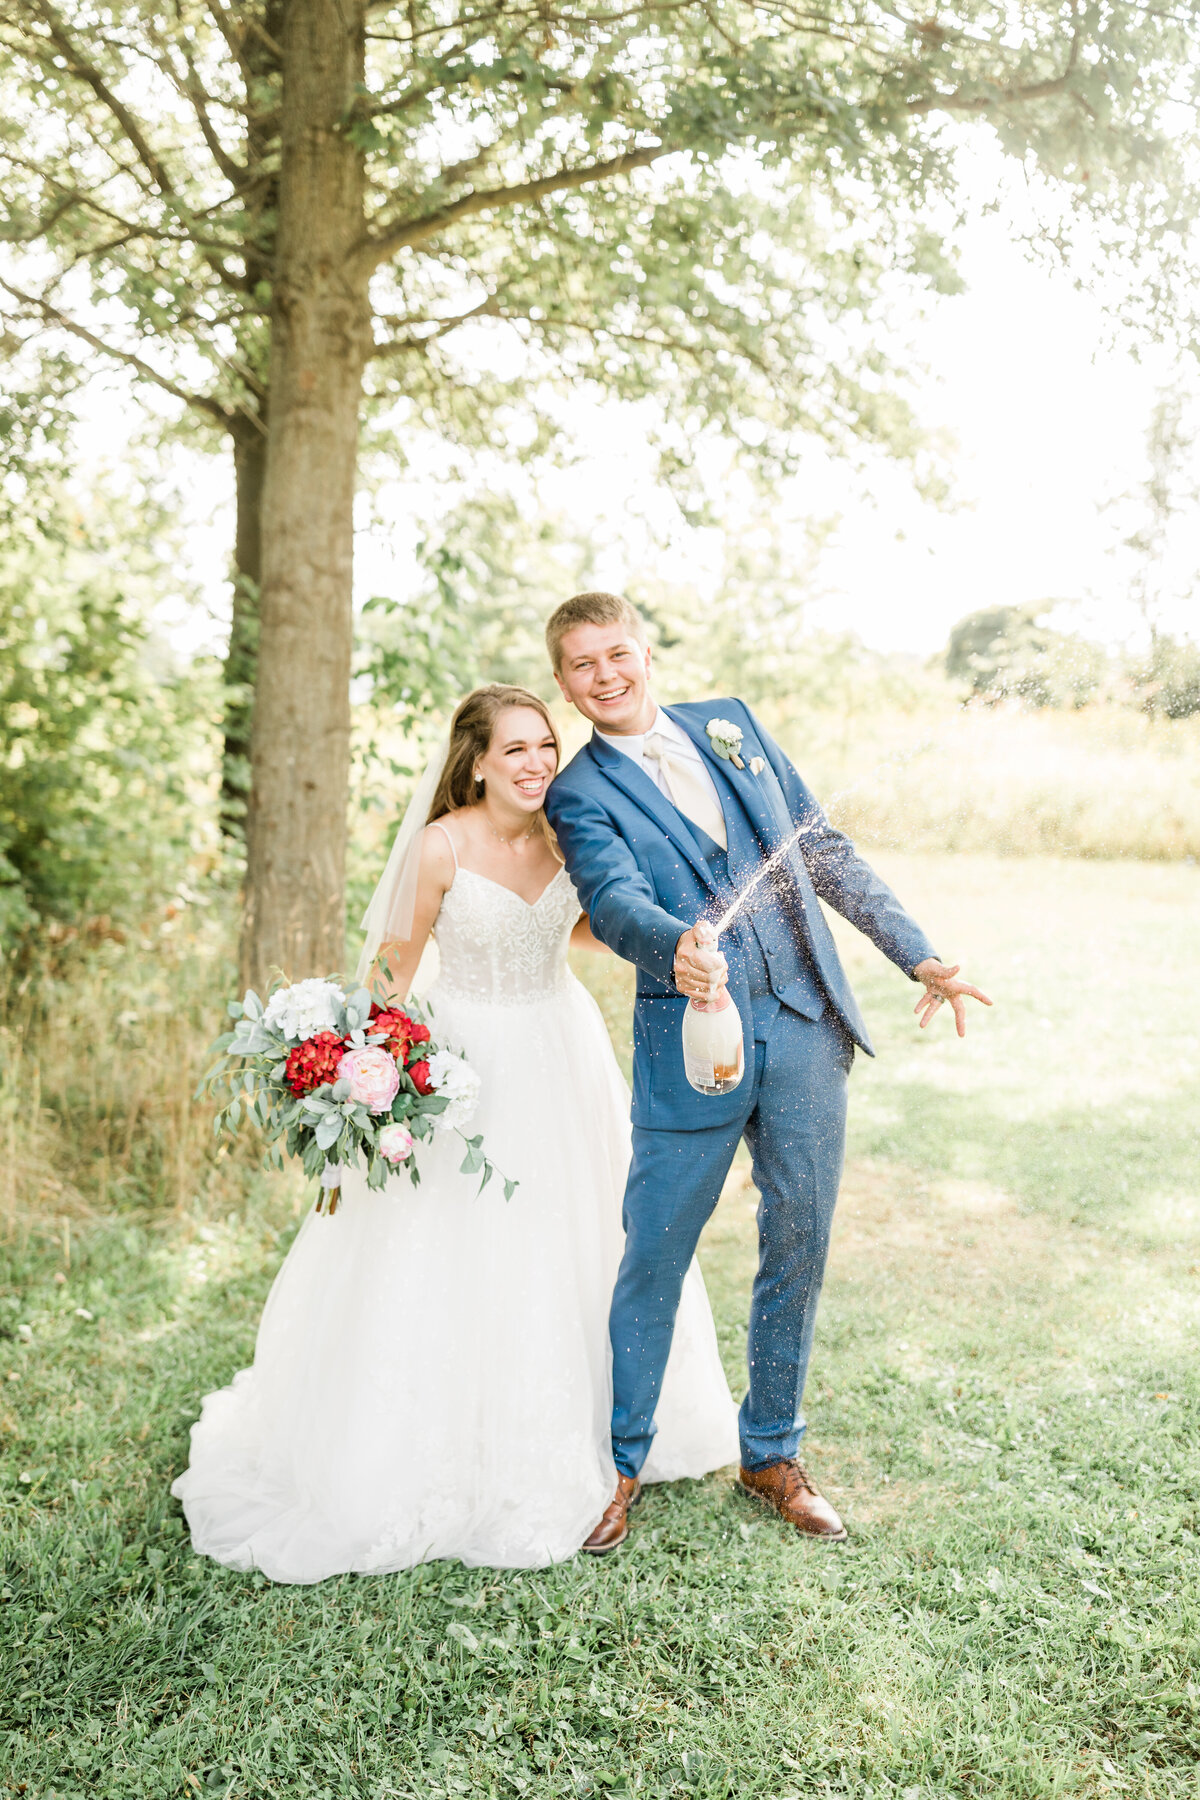 The Best Ohio Wedding Photographer